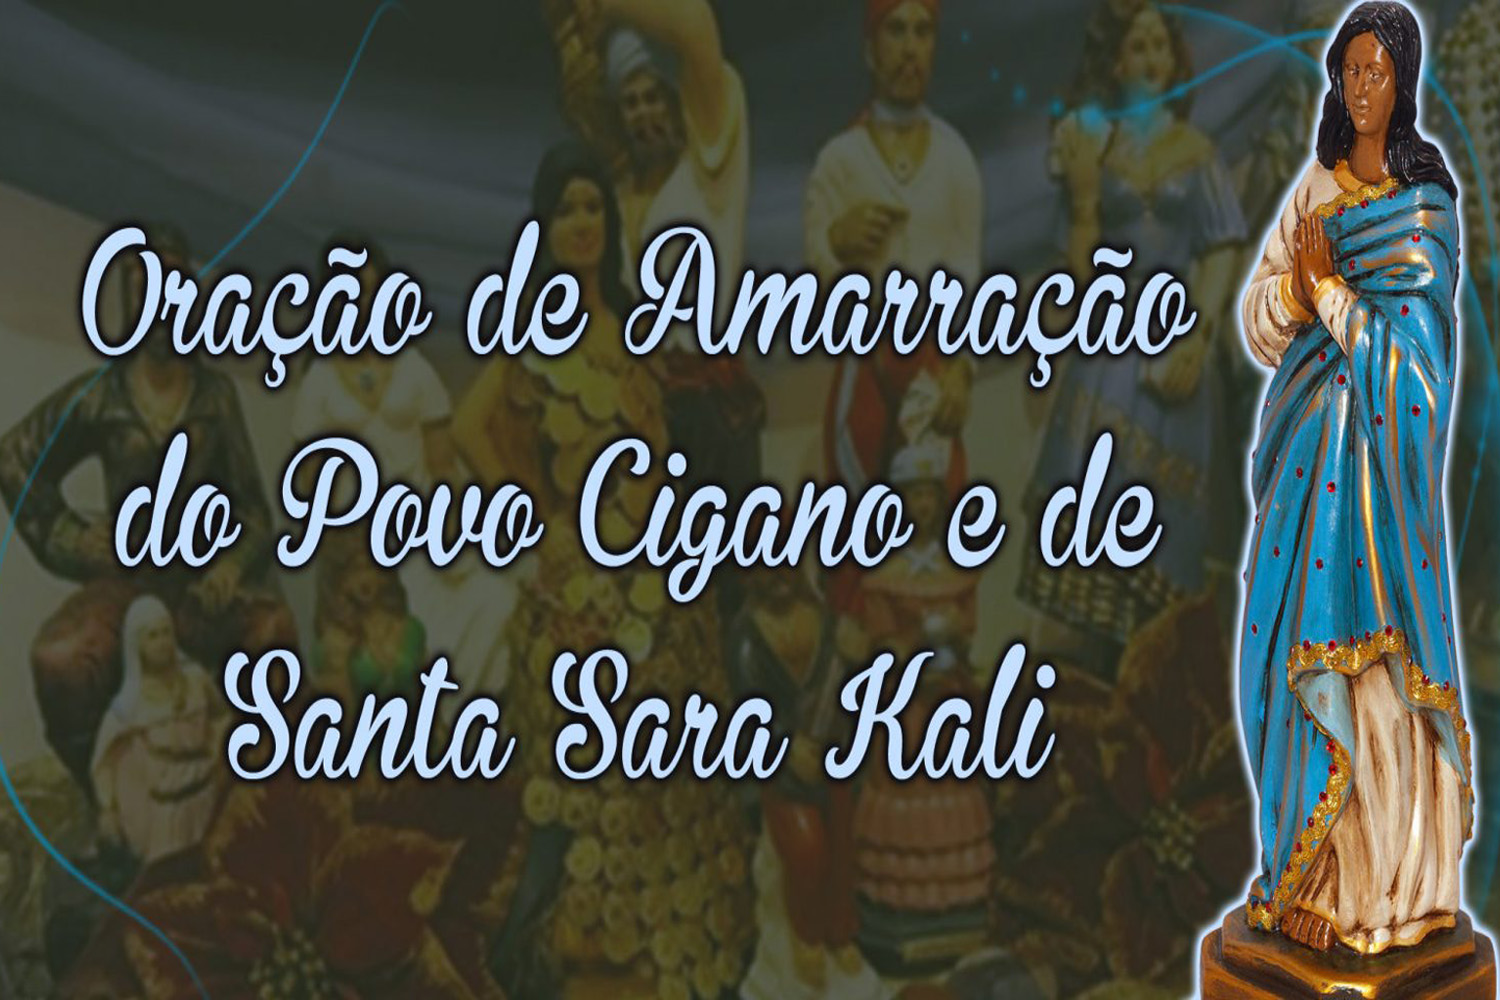 Oração de Amarração do Povo Cigano e de Santa Sara Kali